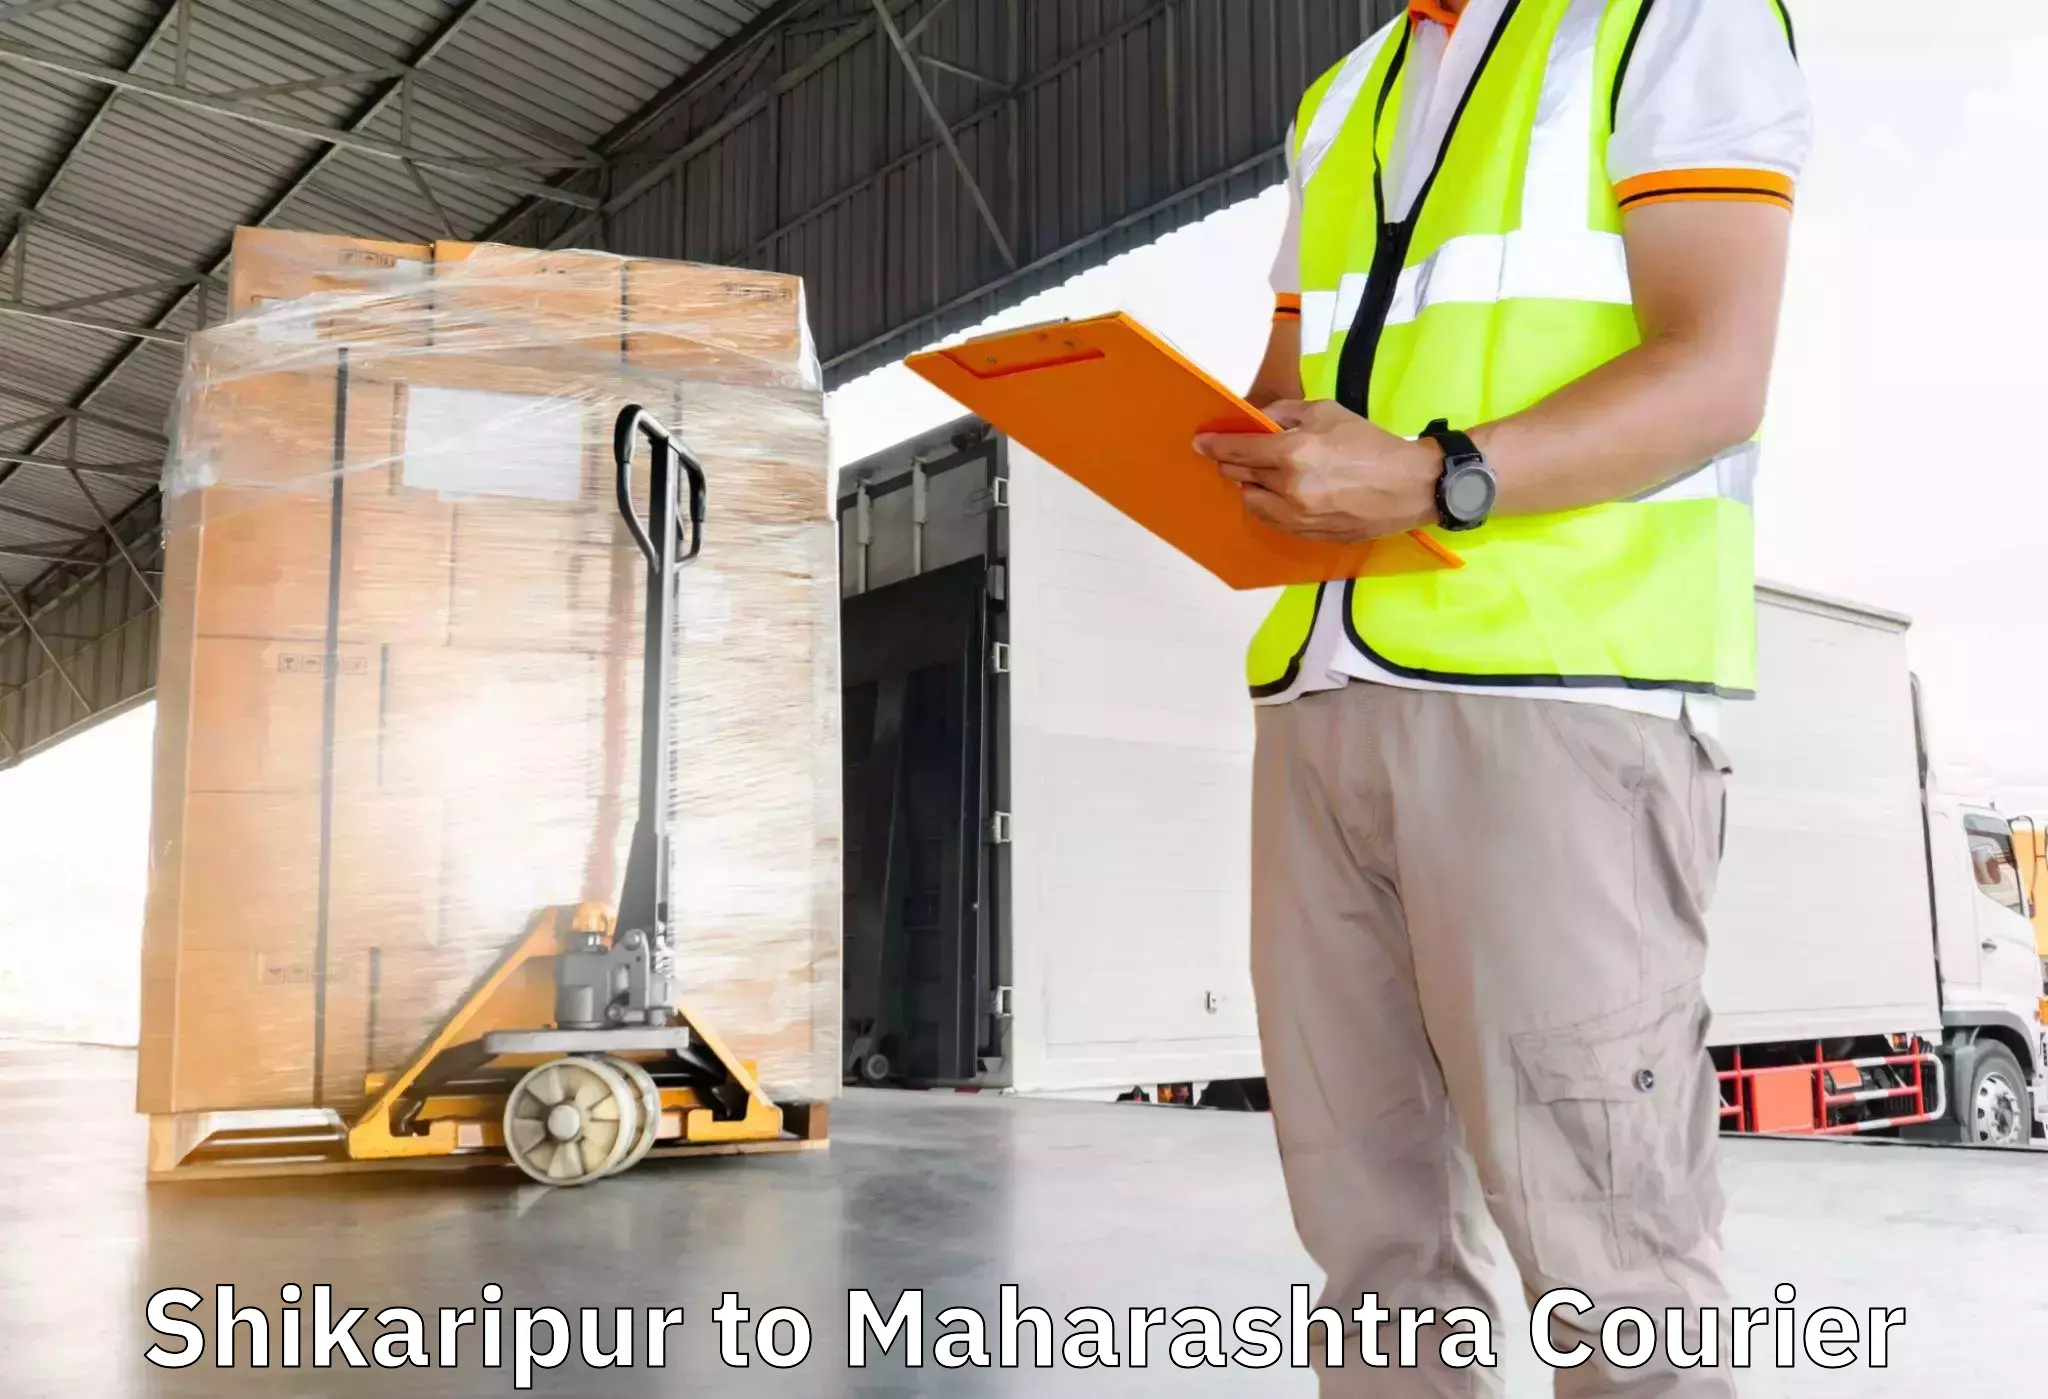 Professional furniture movers Shikaripur to Kalyan Dombivli